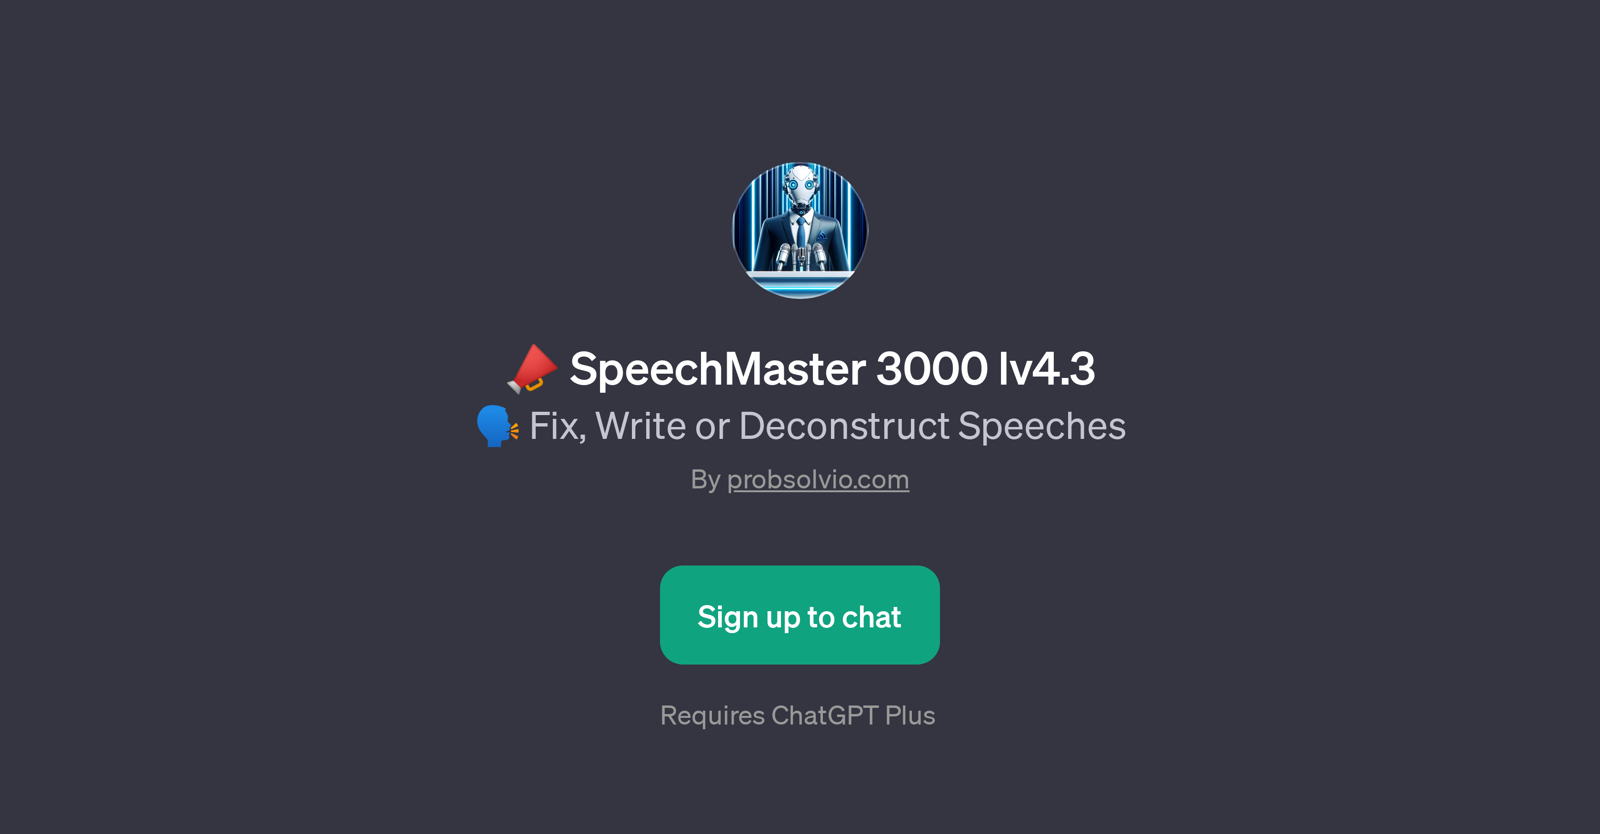 SpeechMaster 3000 lv4.3 website